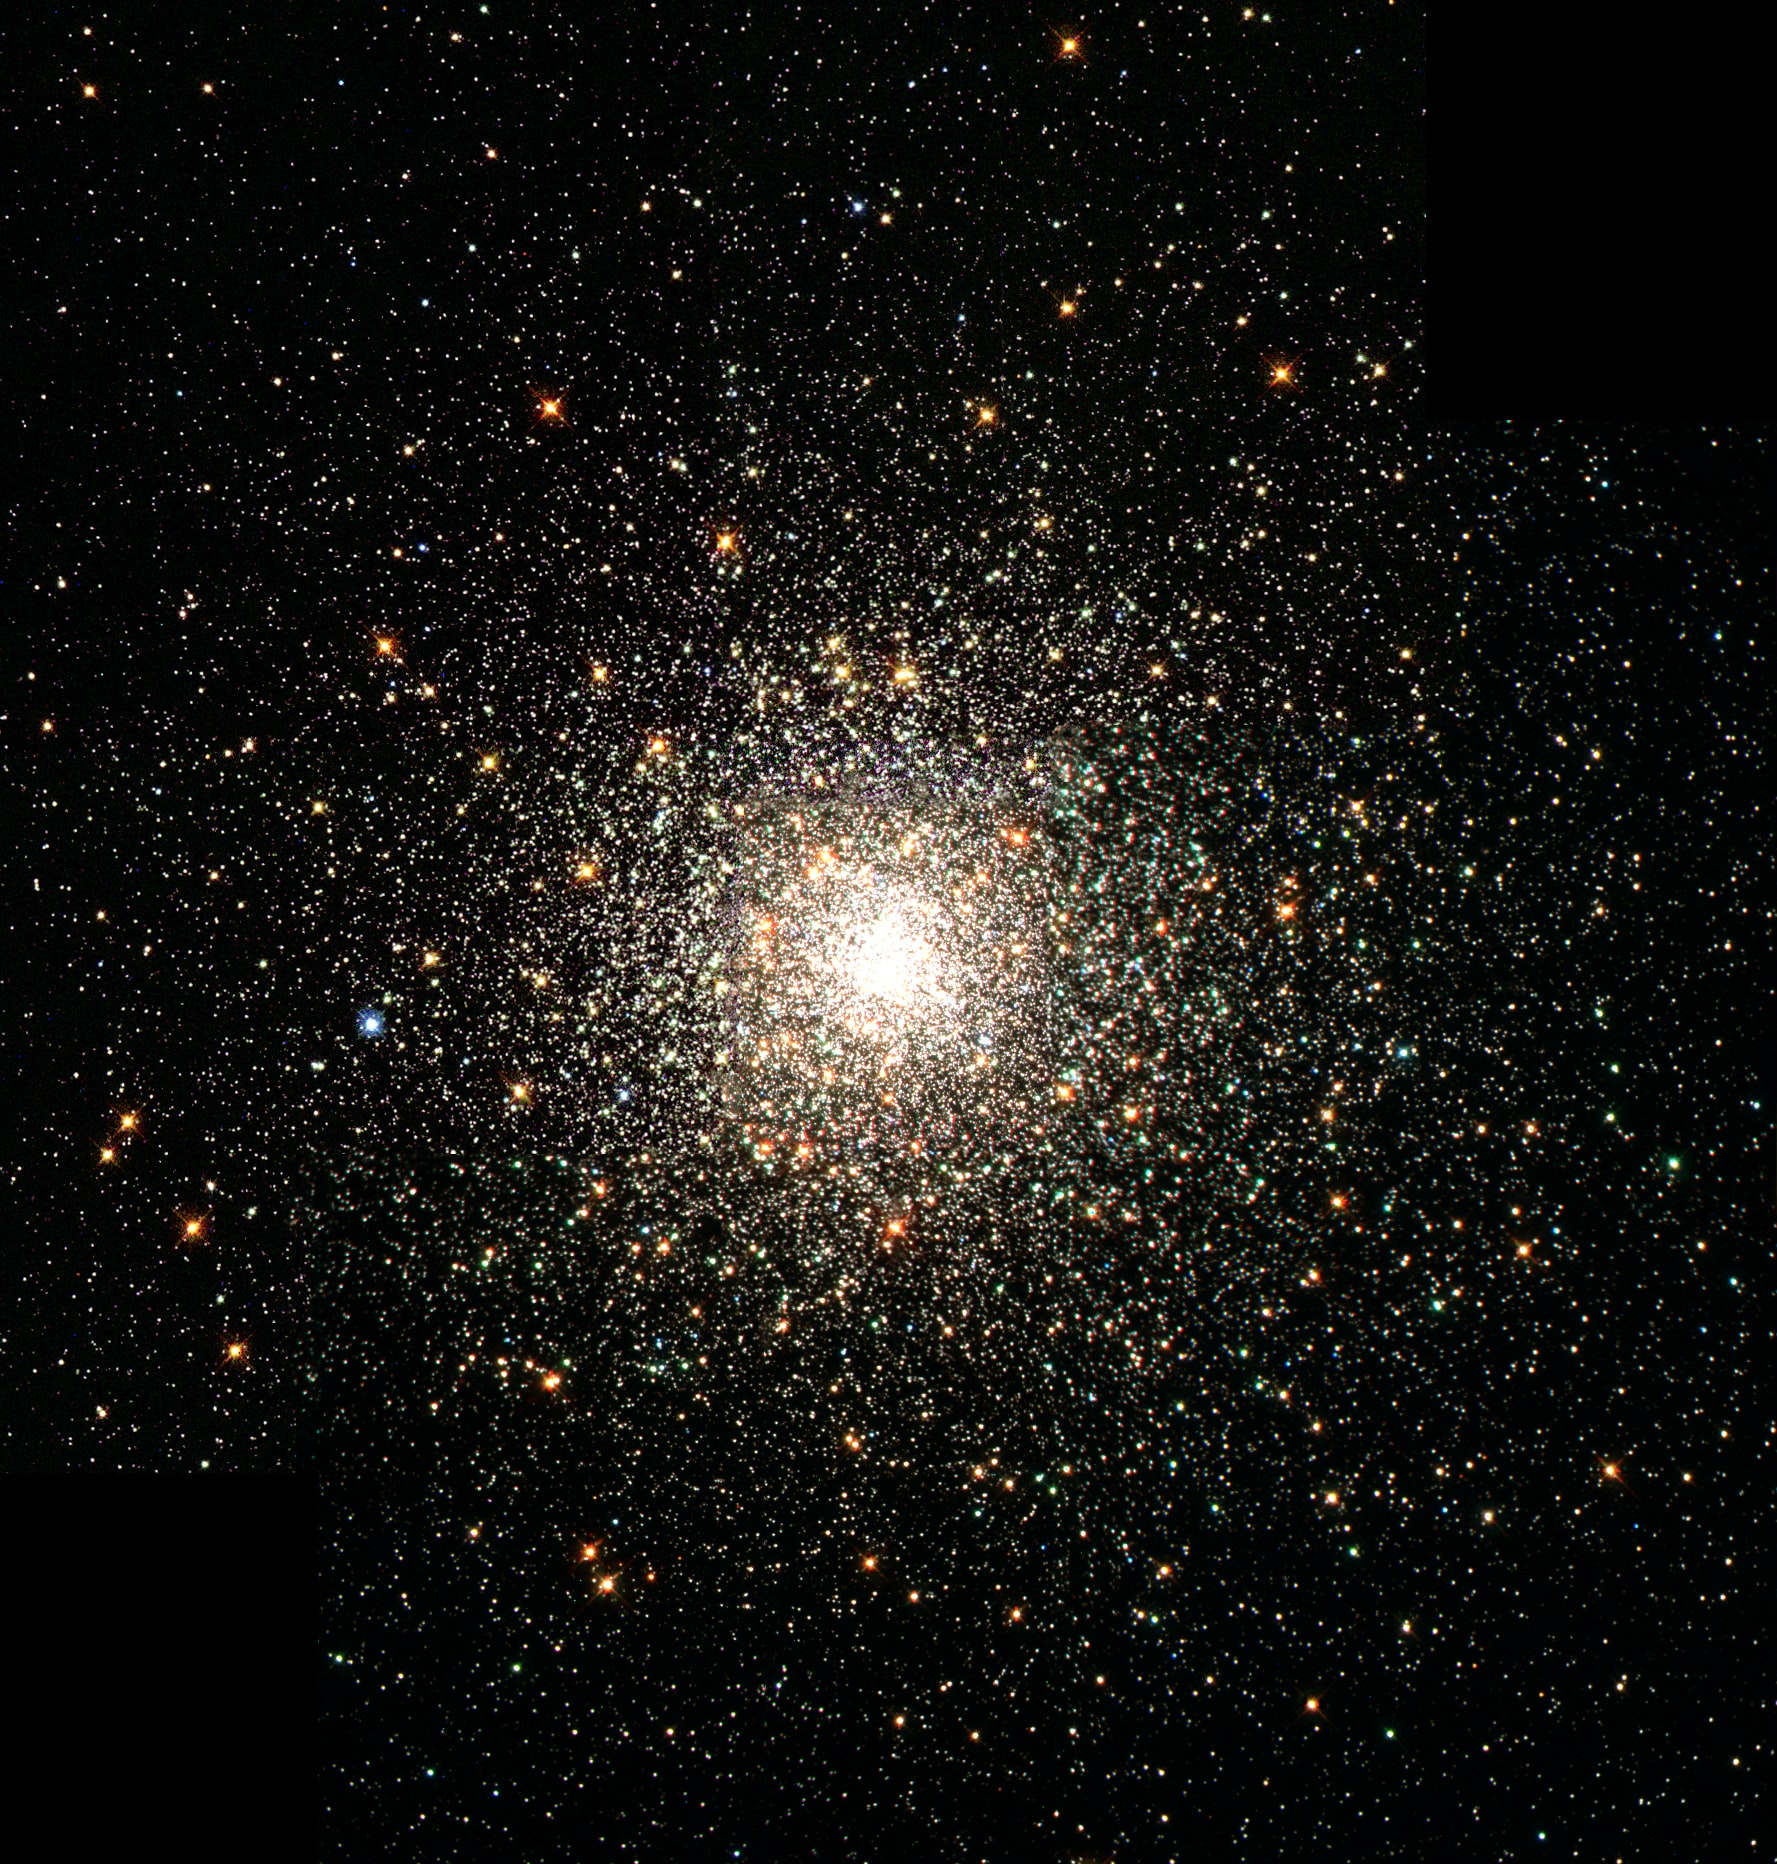 etoiles galaxie photo NASA